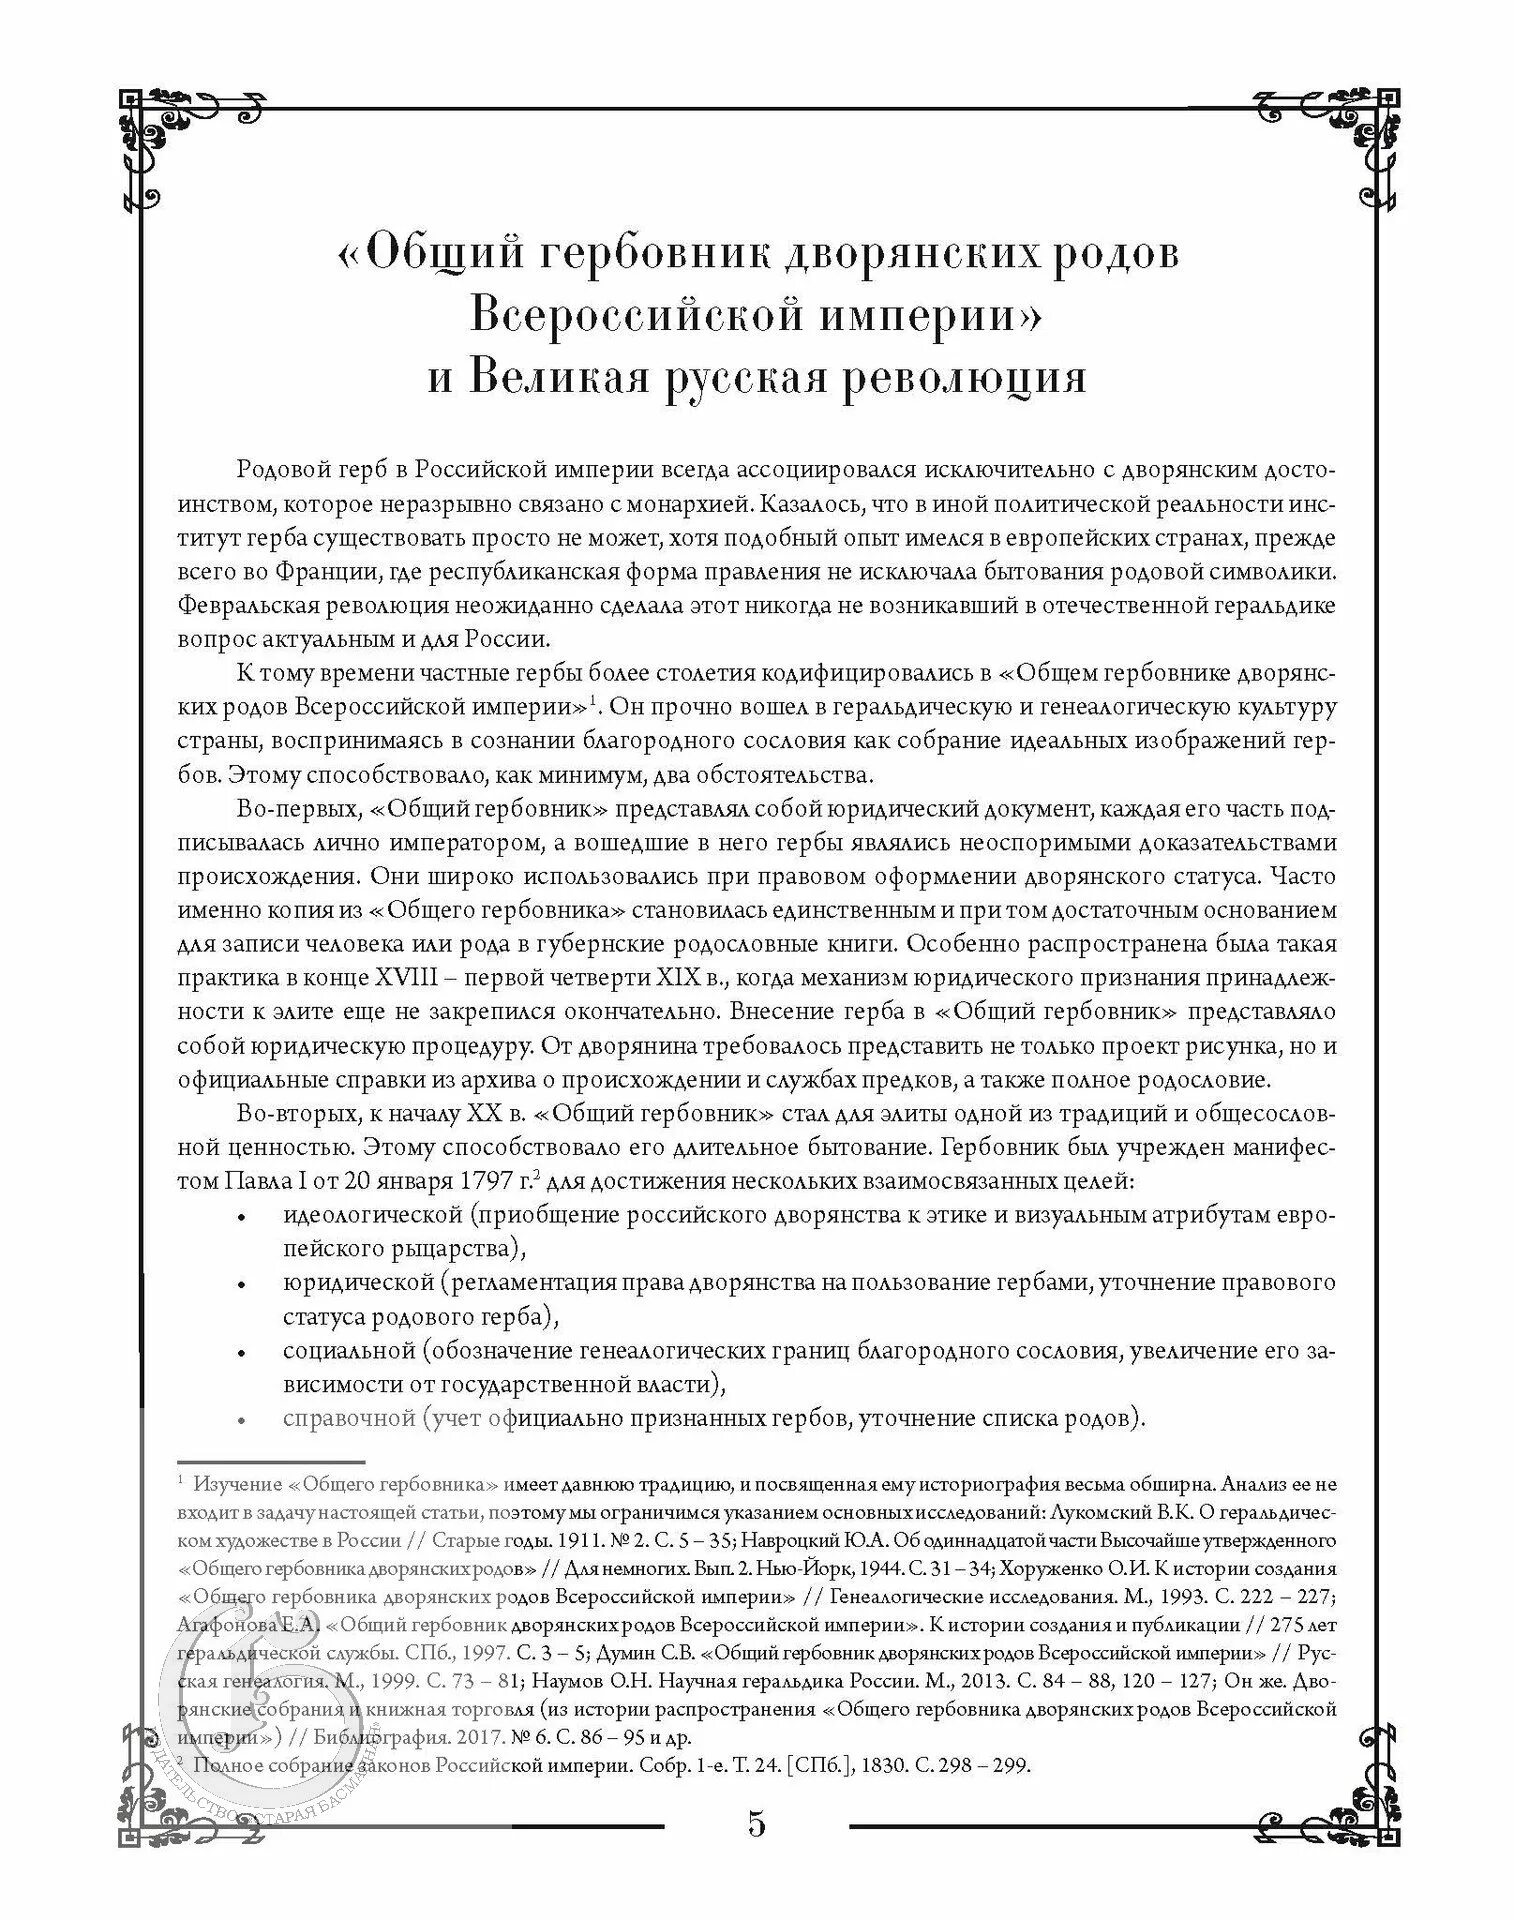 Газеты Всероссийской империи. Список российского дворянства